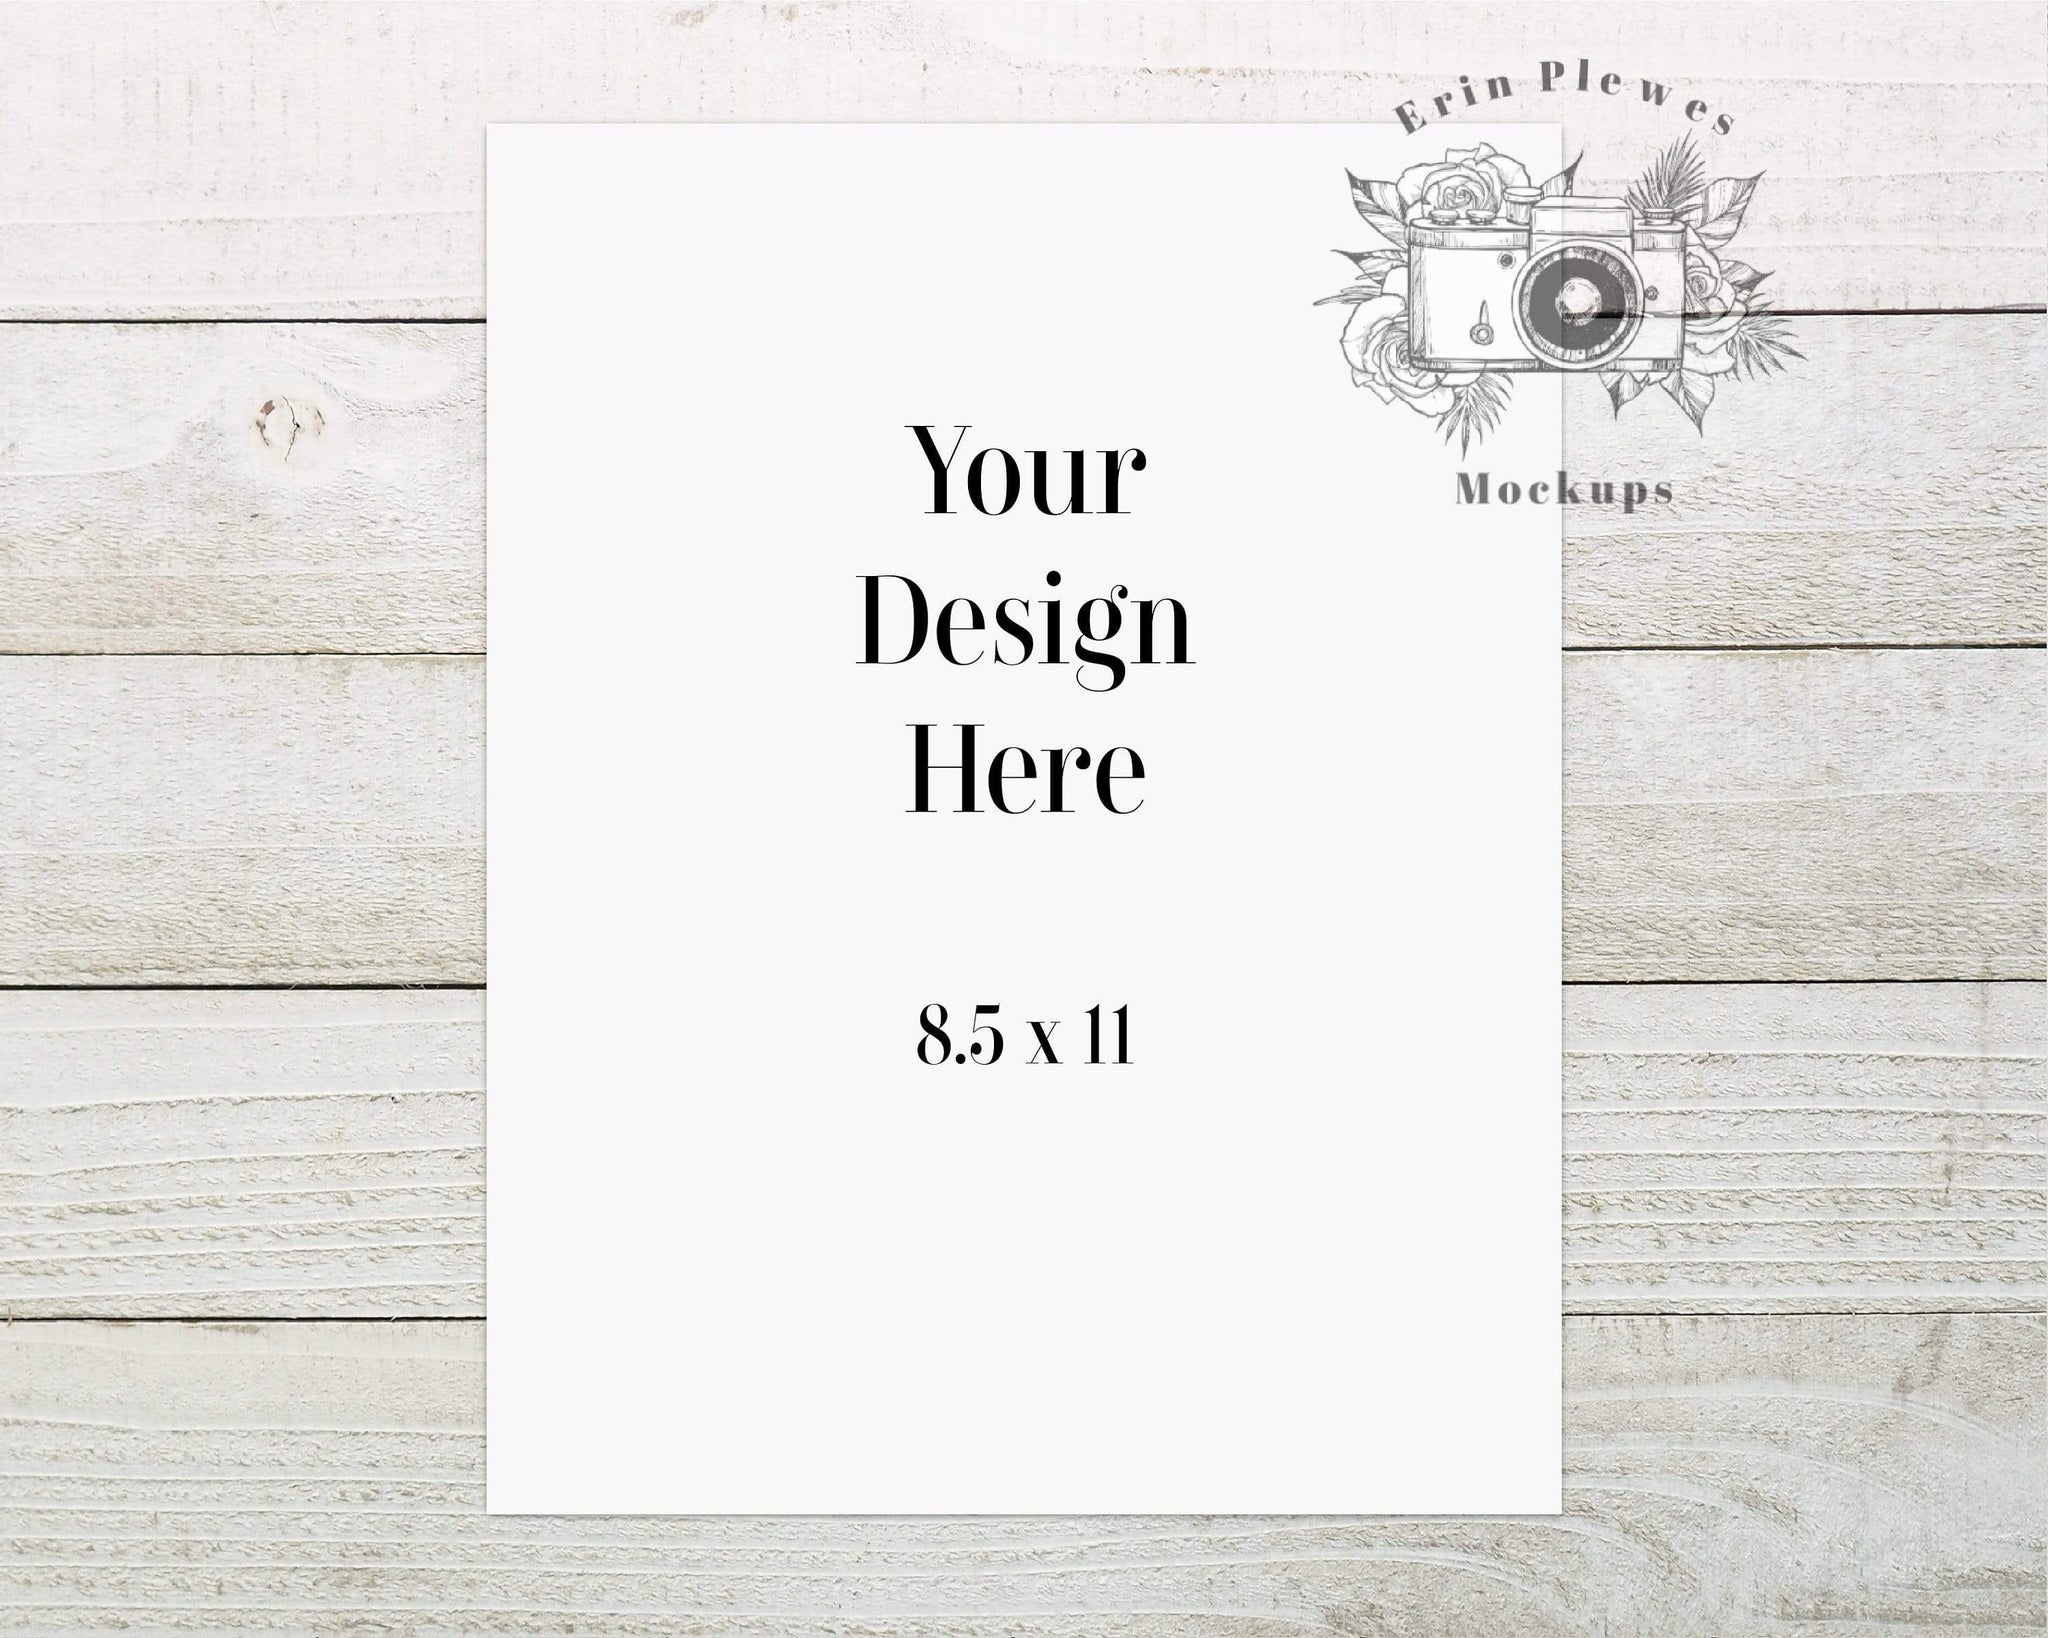 Bạn đang tìm kiếm các thiết kế mới cho sản phẩm của mình? Hãy xem ngay các mẫu mockup giấy độc đáo để trình bày sản phẩm của bạn một cách chuyên nghiệp và thu hút khách hàng.